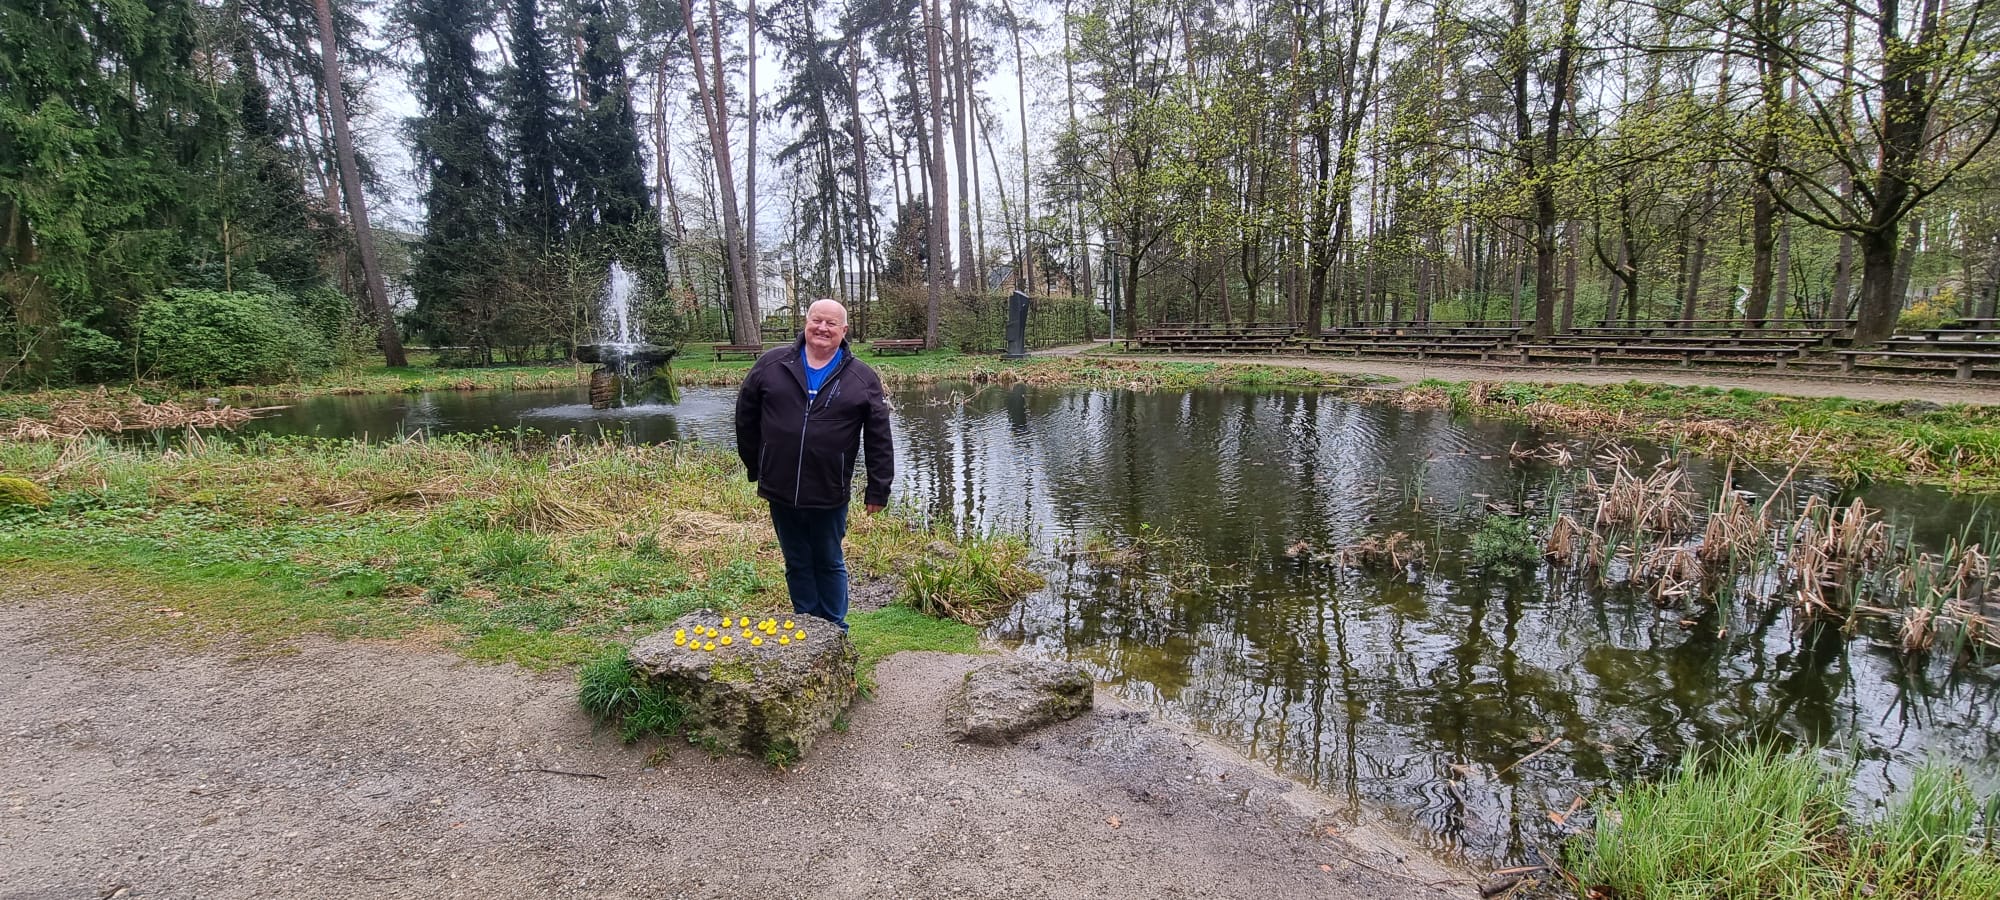 Hans Glatt im Stadtpark bei unserem Aprilscherz